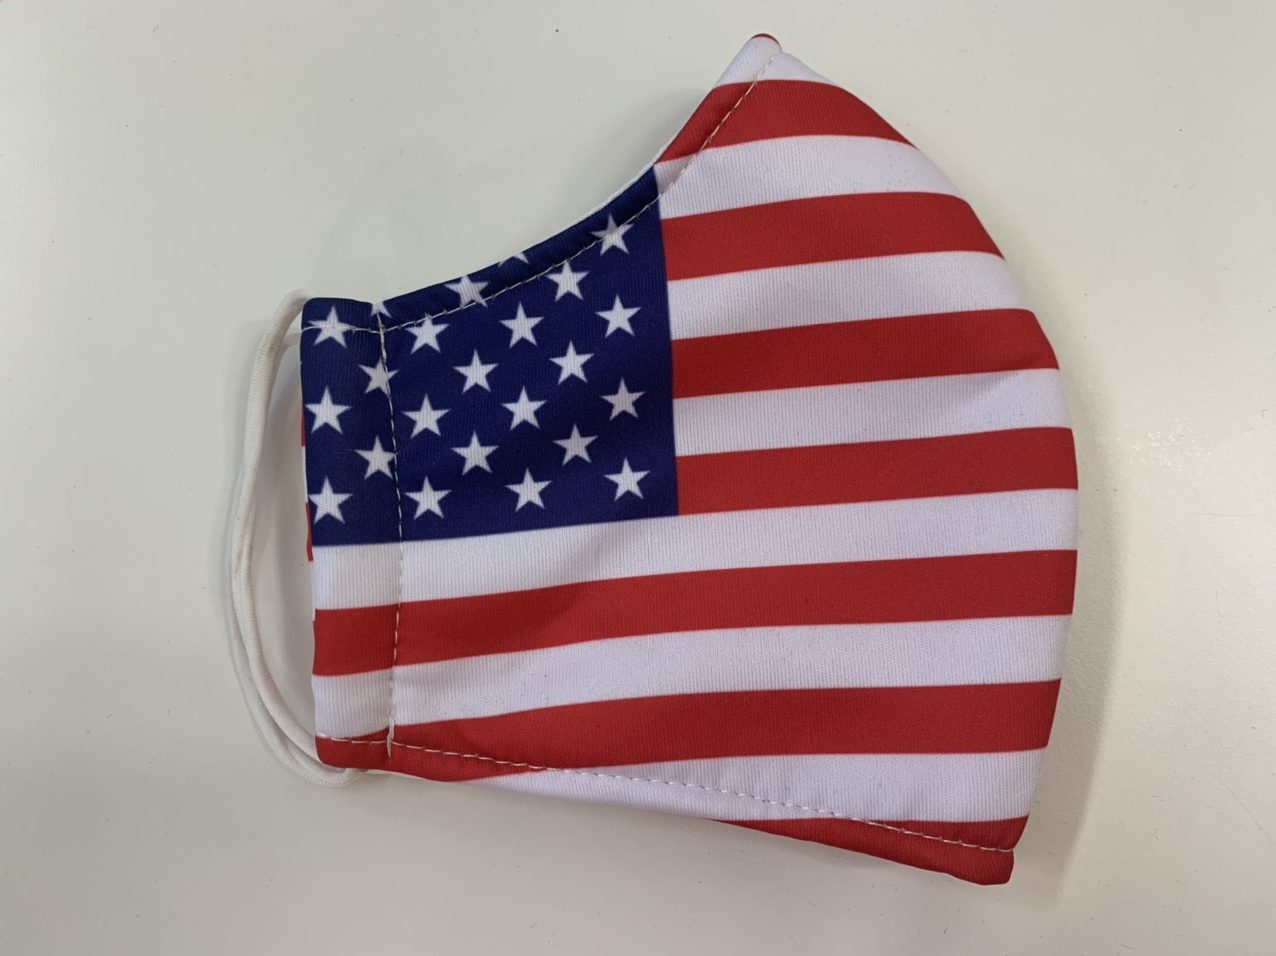 Khẩu trang cờ Mỹ là một sự kết hợp hoàn hảo giữa sự bảo vệ sức khỏe và tình yêu với đất nước Mỹ. Mang trong mình tinh thần tự hào và sự đoàn kết, khẩu trang cờ Mỹ không chỉ giúp bảo vệ bạn mà còn là món quà ý nghĩa dành tặng cho những người yêu quý đất nước.